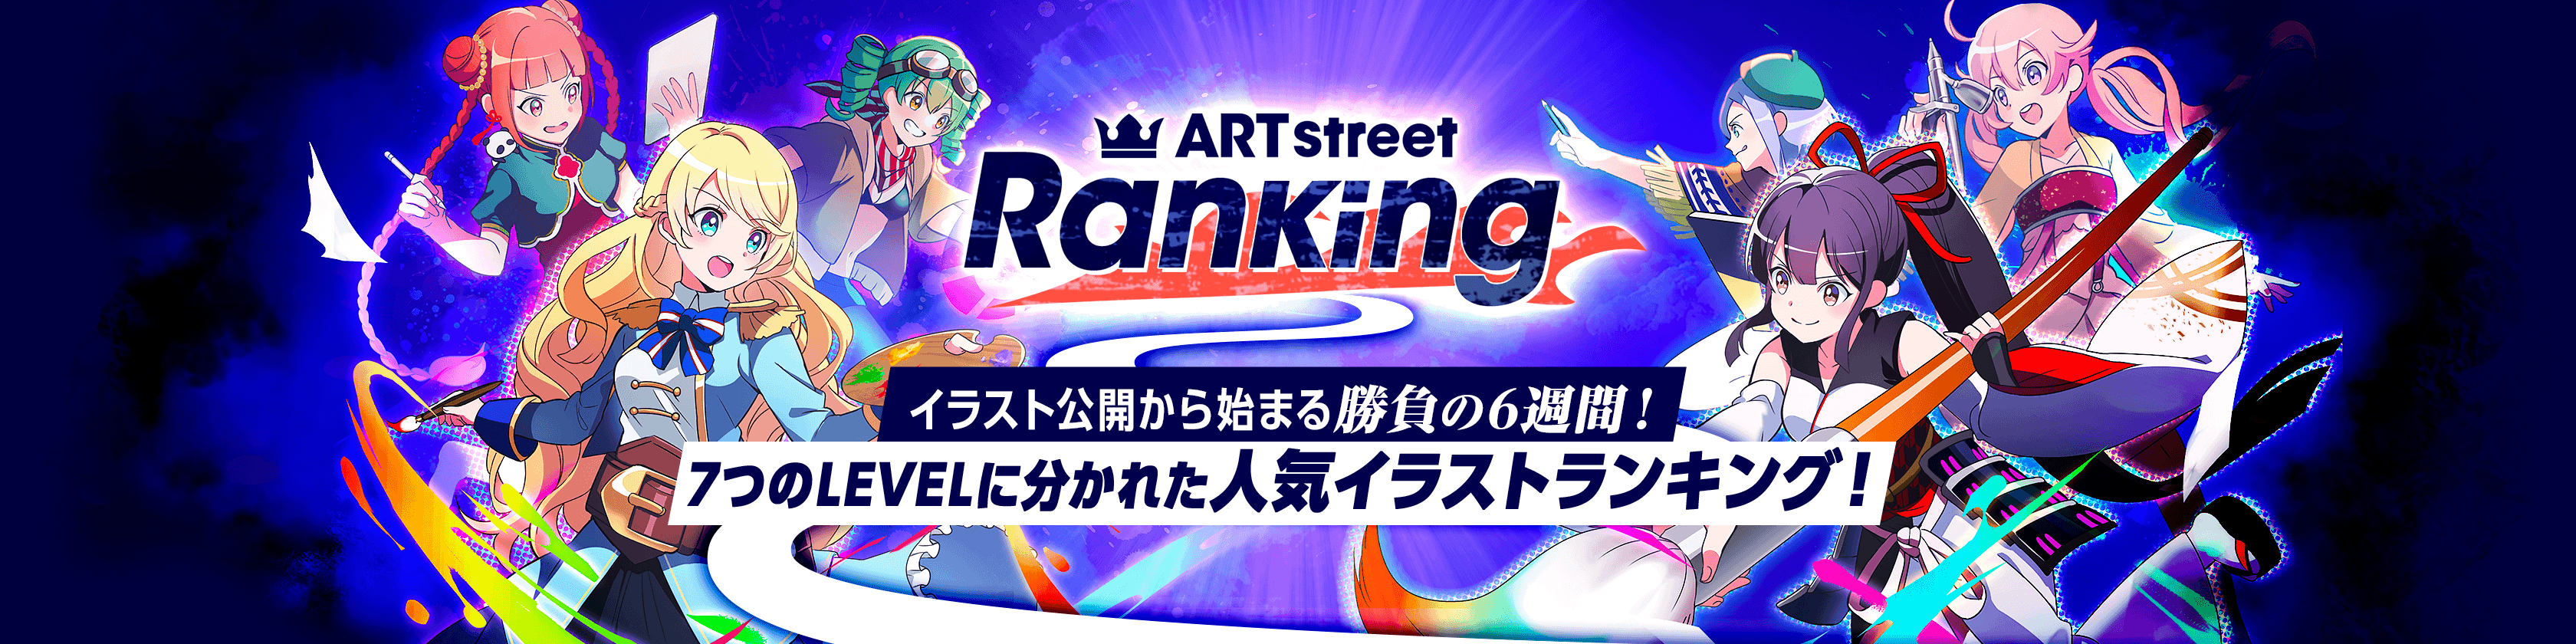 ART street Ranking！イラスト公開から始まる勝負の6週間！8つのLEVELに分かれた人気イラストランキング！